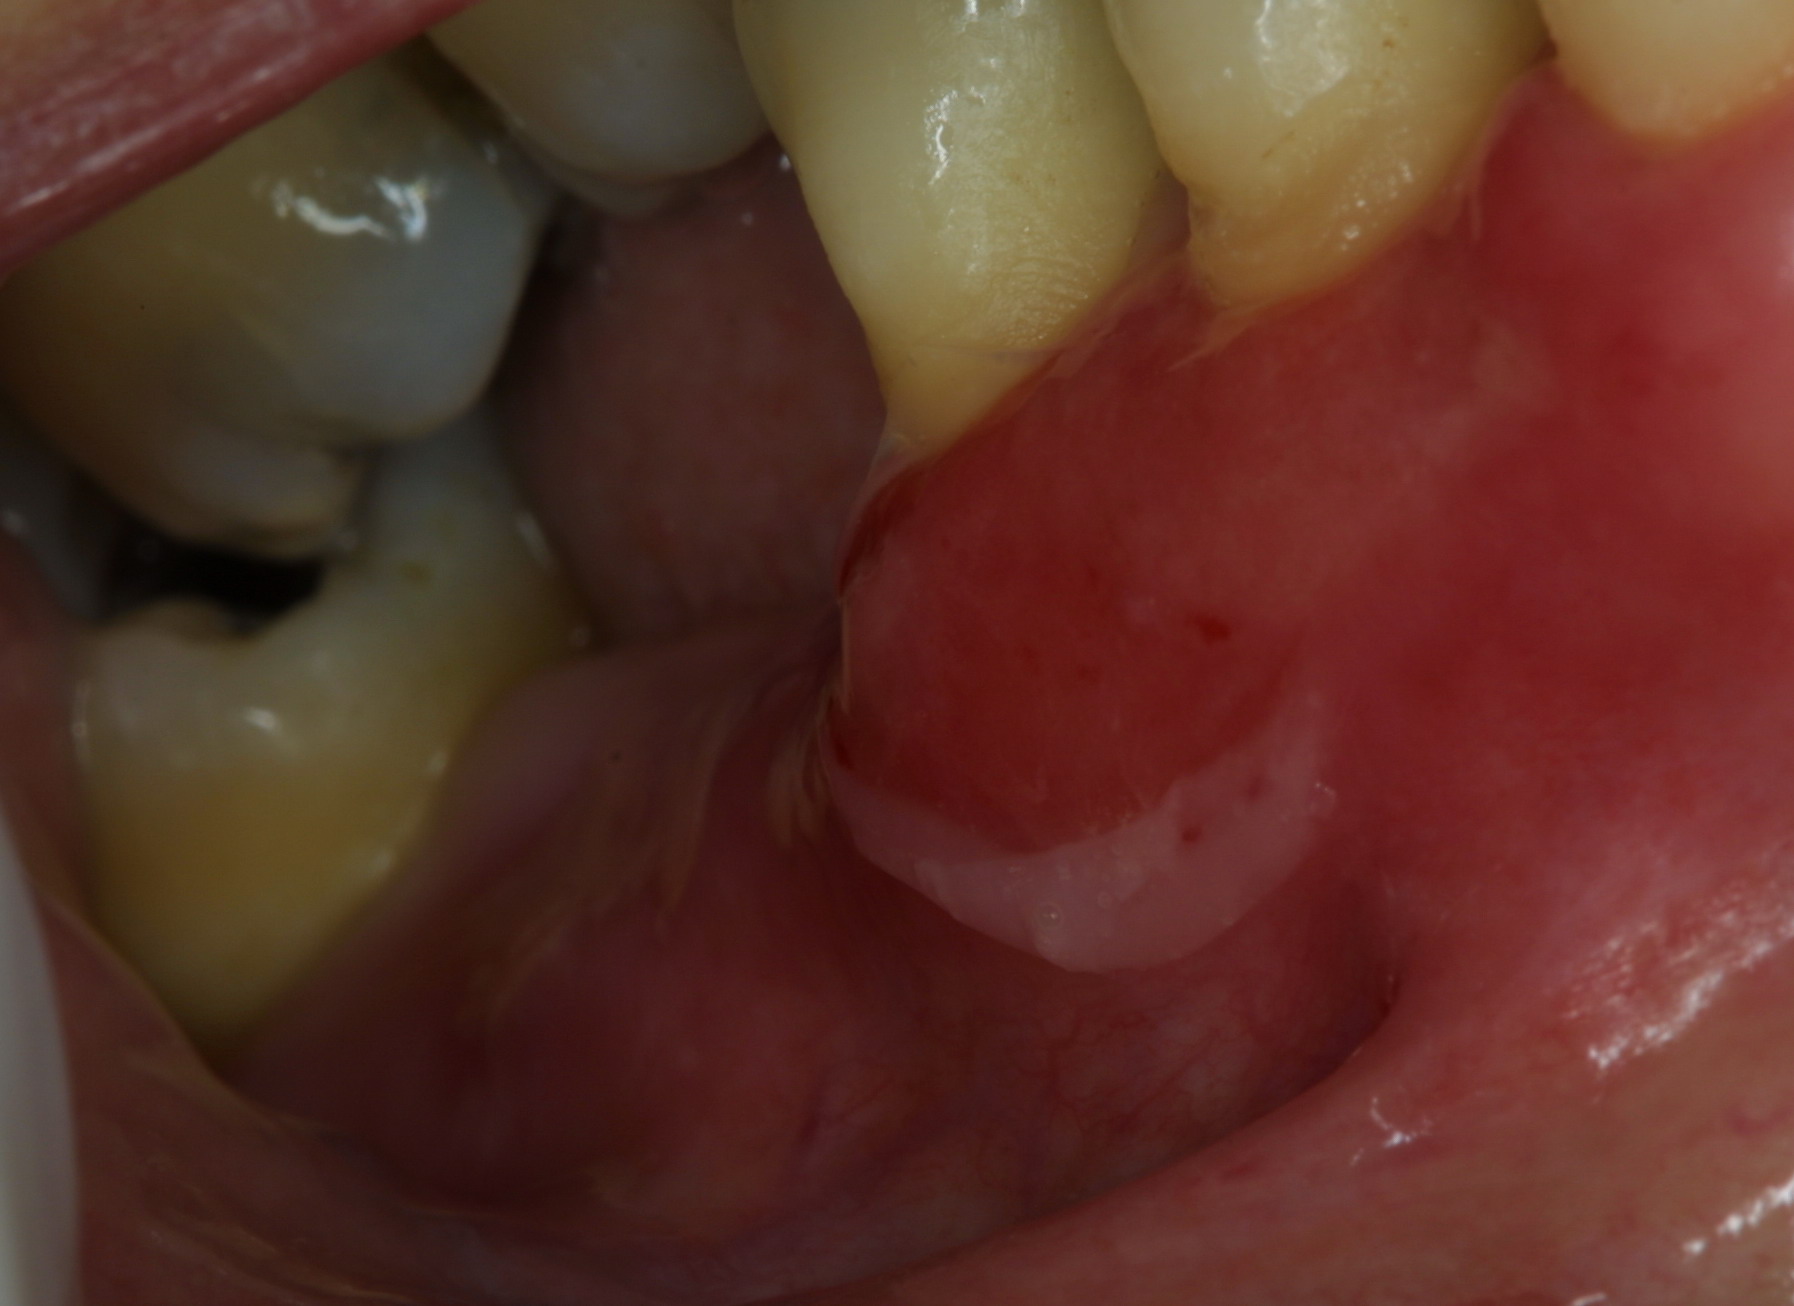 pemphigoid oral